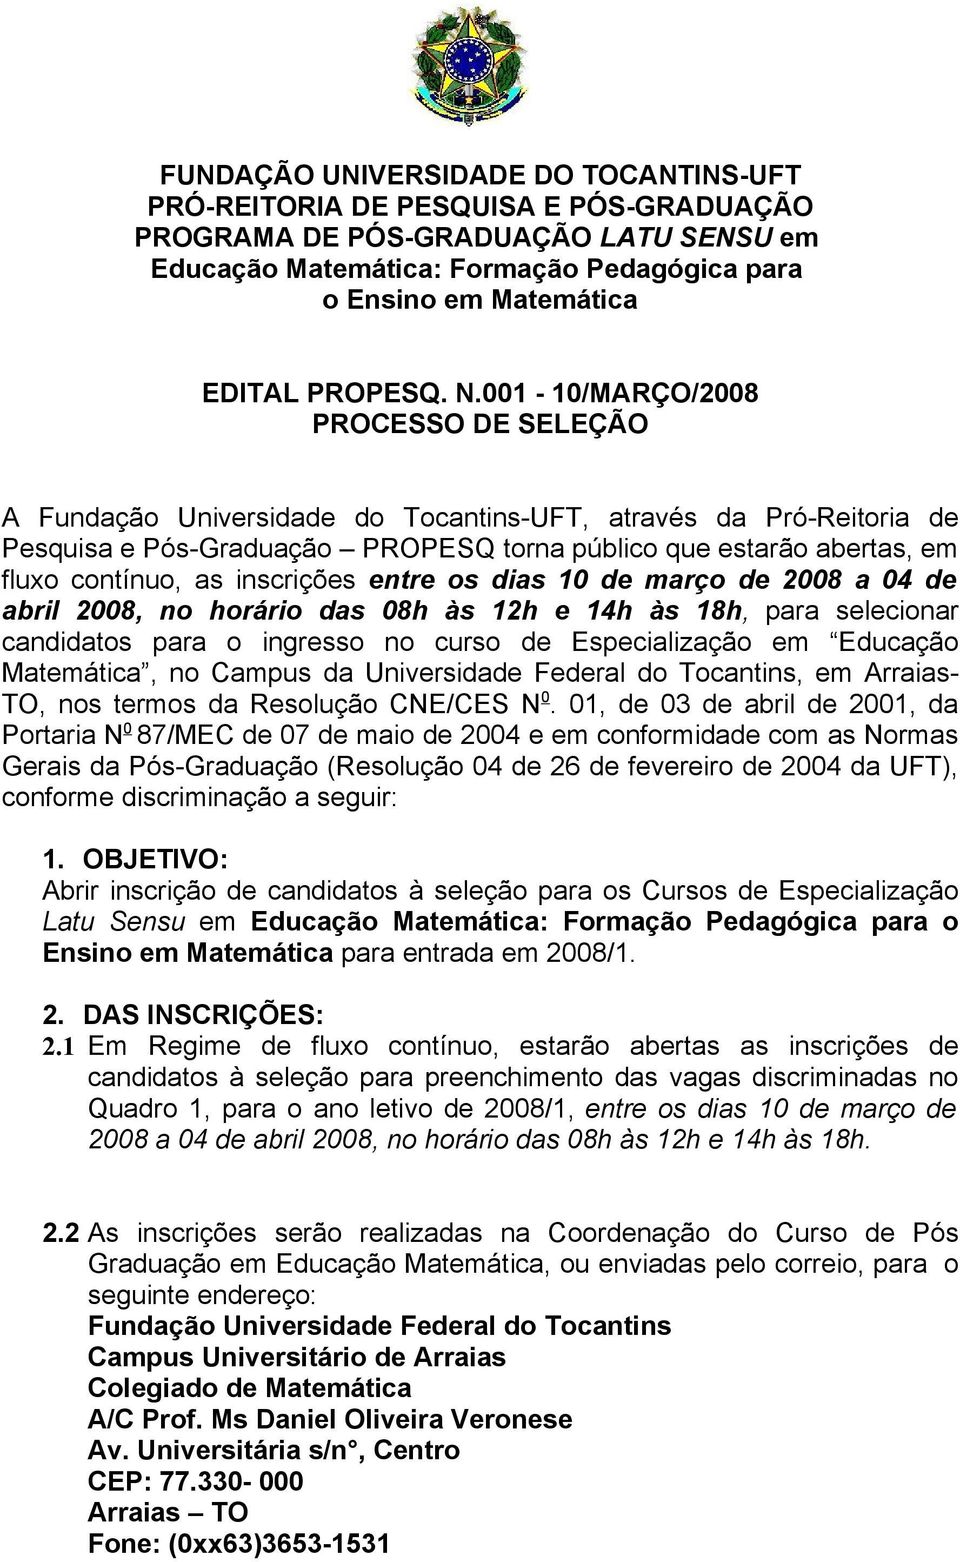 001-10/MARÇO/2008 PROCESSO DE SELEÇÃO A Fundação Universidade do Tocantins-UFT, através da Pró-Reitoria de Pesquisa e Pós-Graduação PROPESQ torna público que estarão abertas, em fluxo contínuo, as